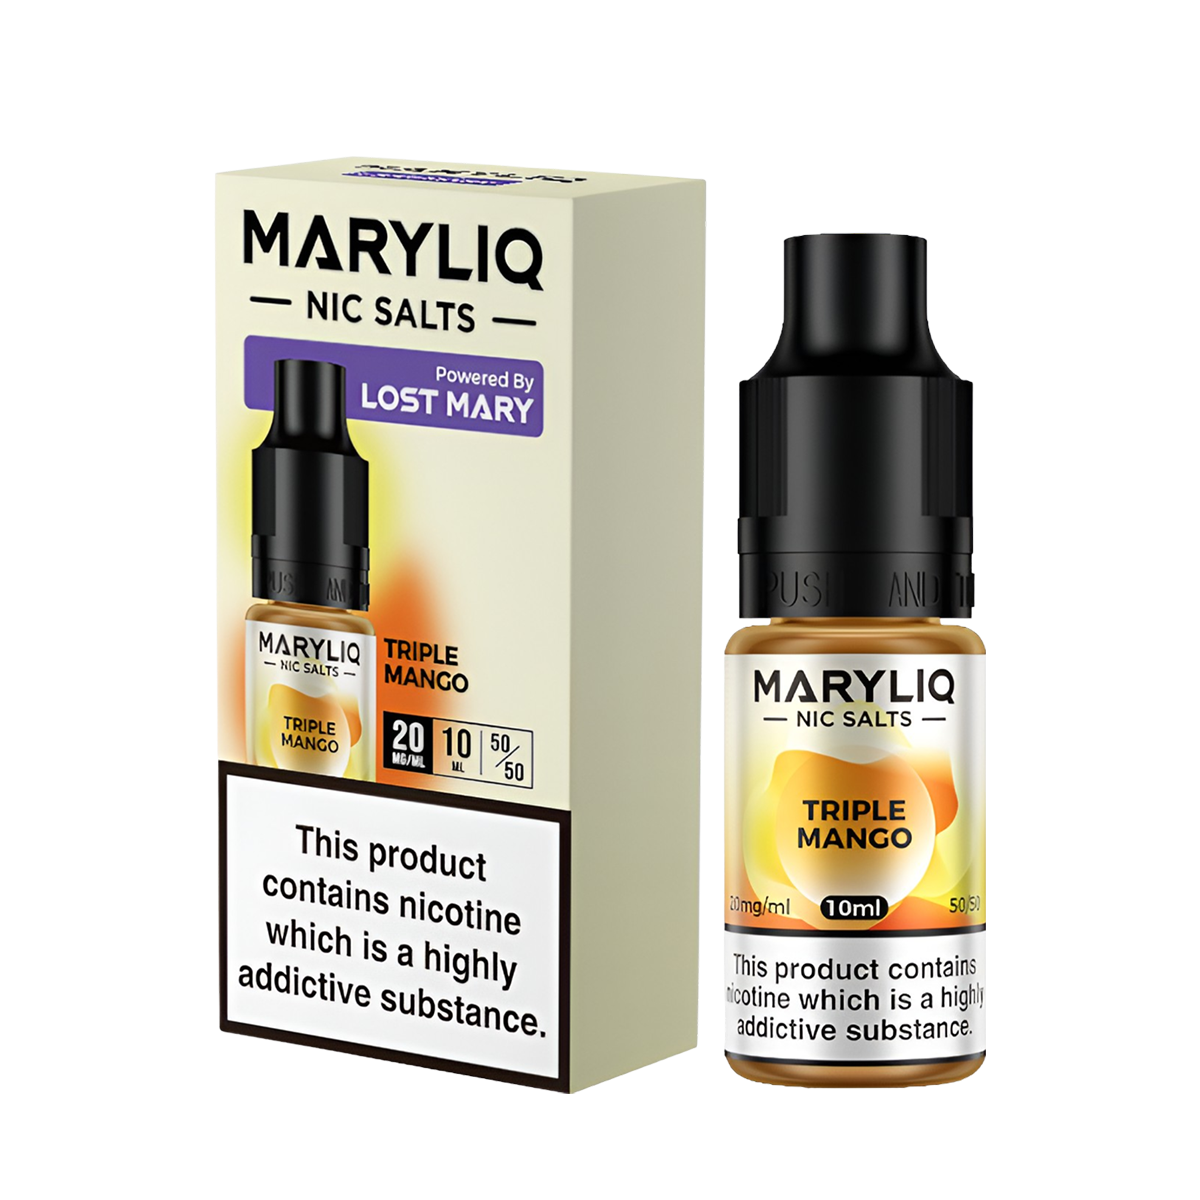 Lost Mary Maryliq Salt Nicotine Vape Juice 20 Mg 10 Ml Triple Mango